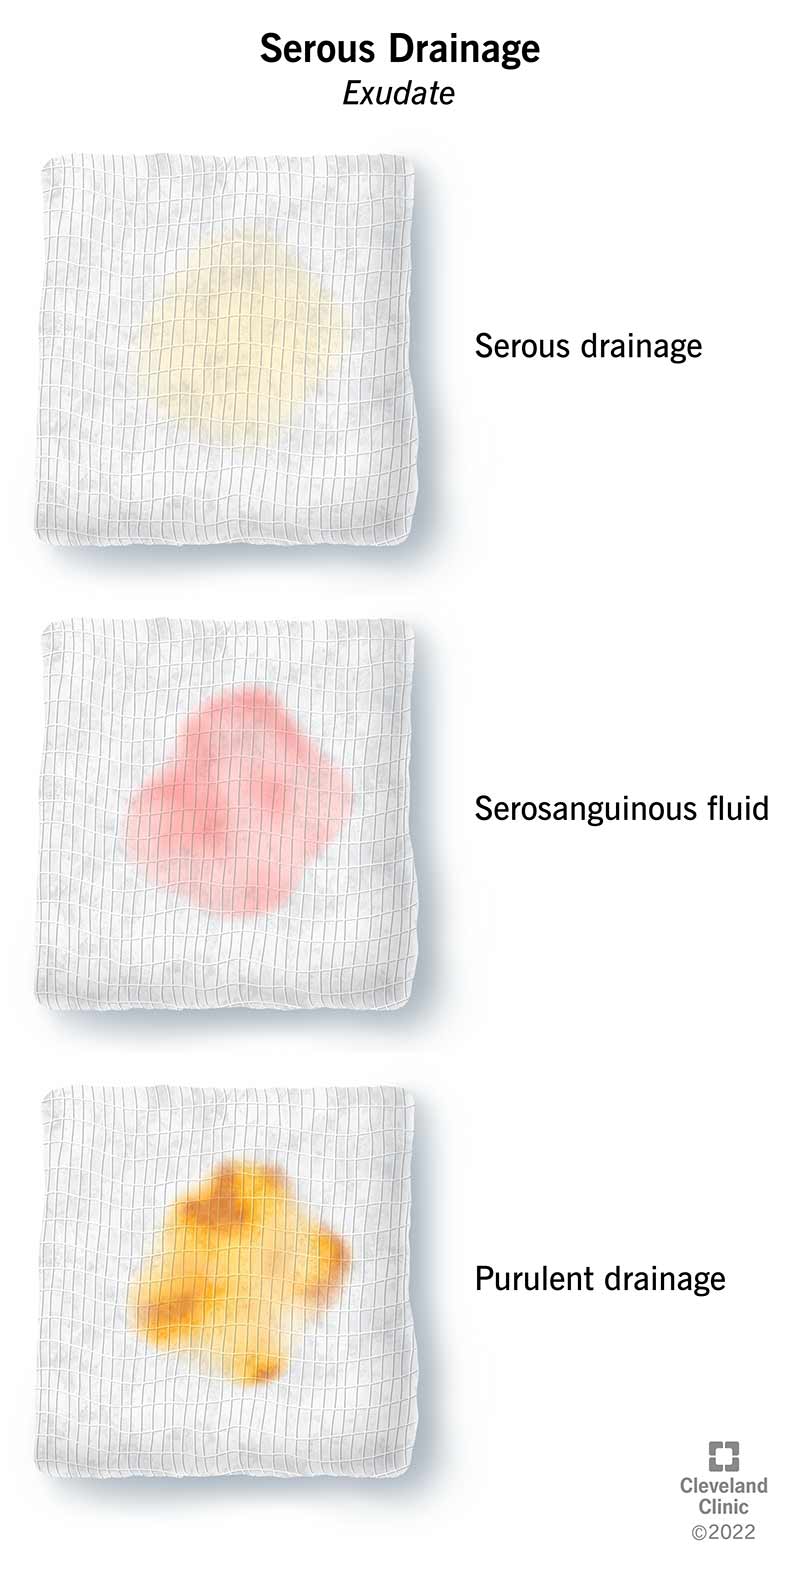 Trijų žaizdų tvarsčių su seroziniu drenažu ir kitų rūšių eksudatu iliustracija.